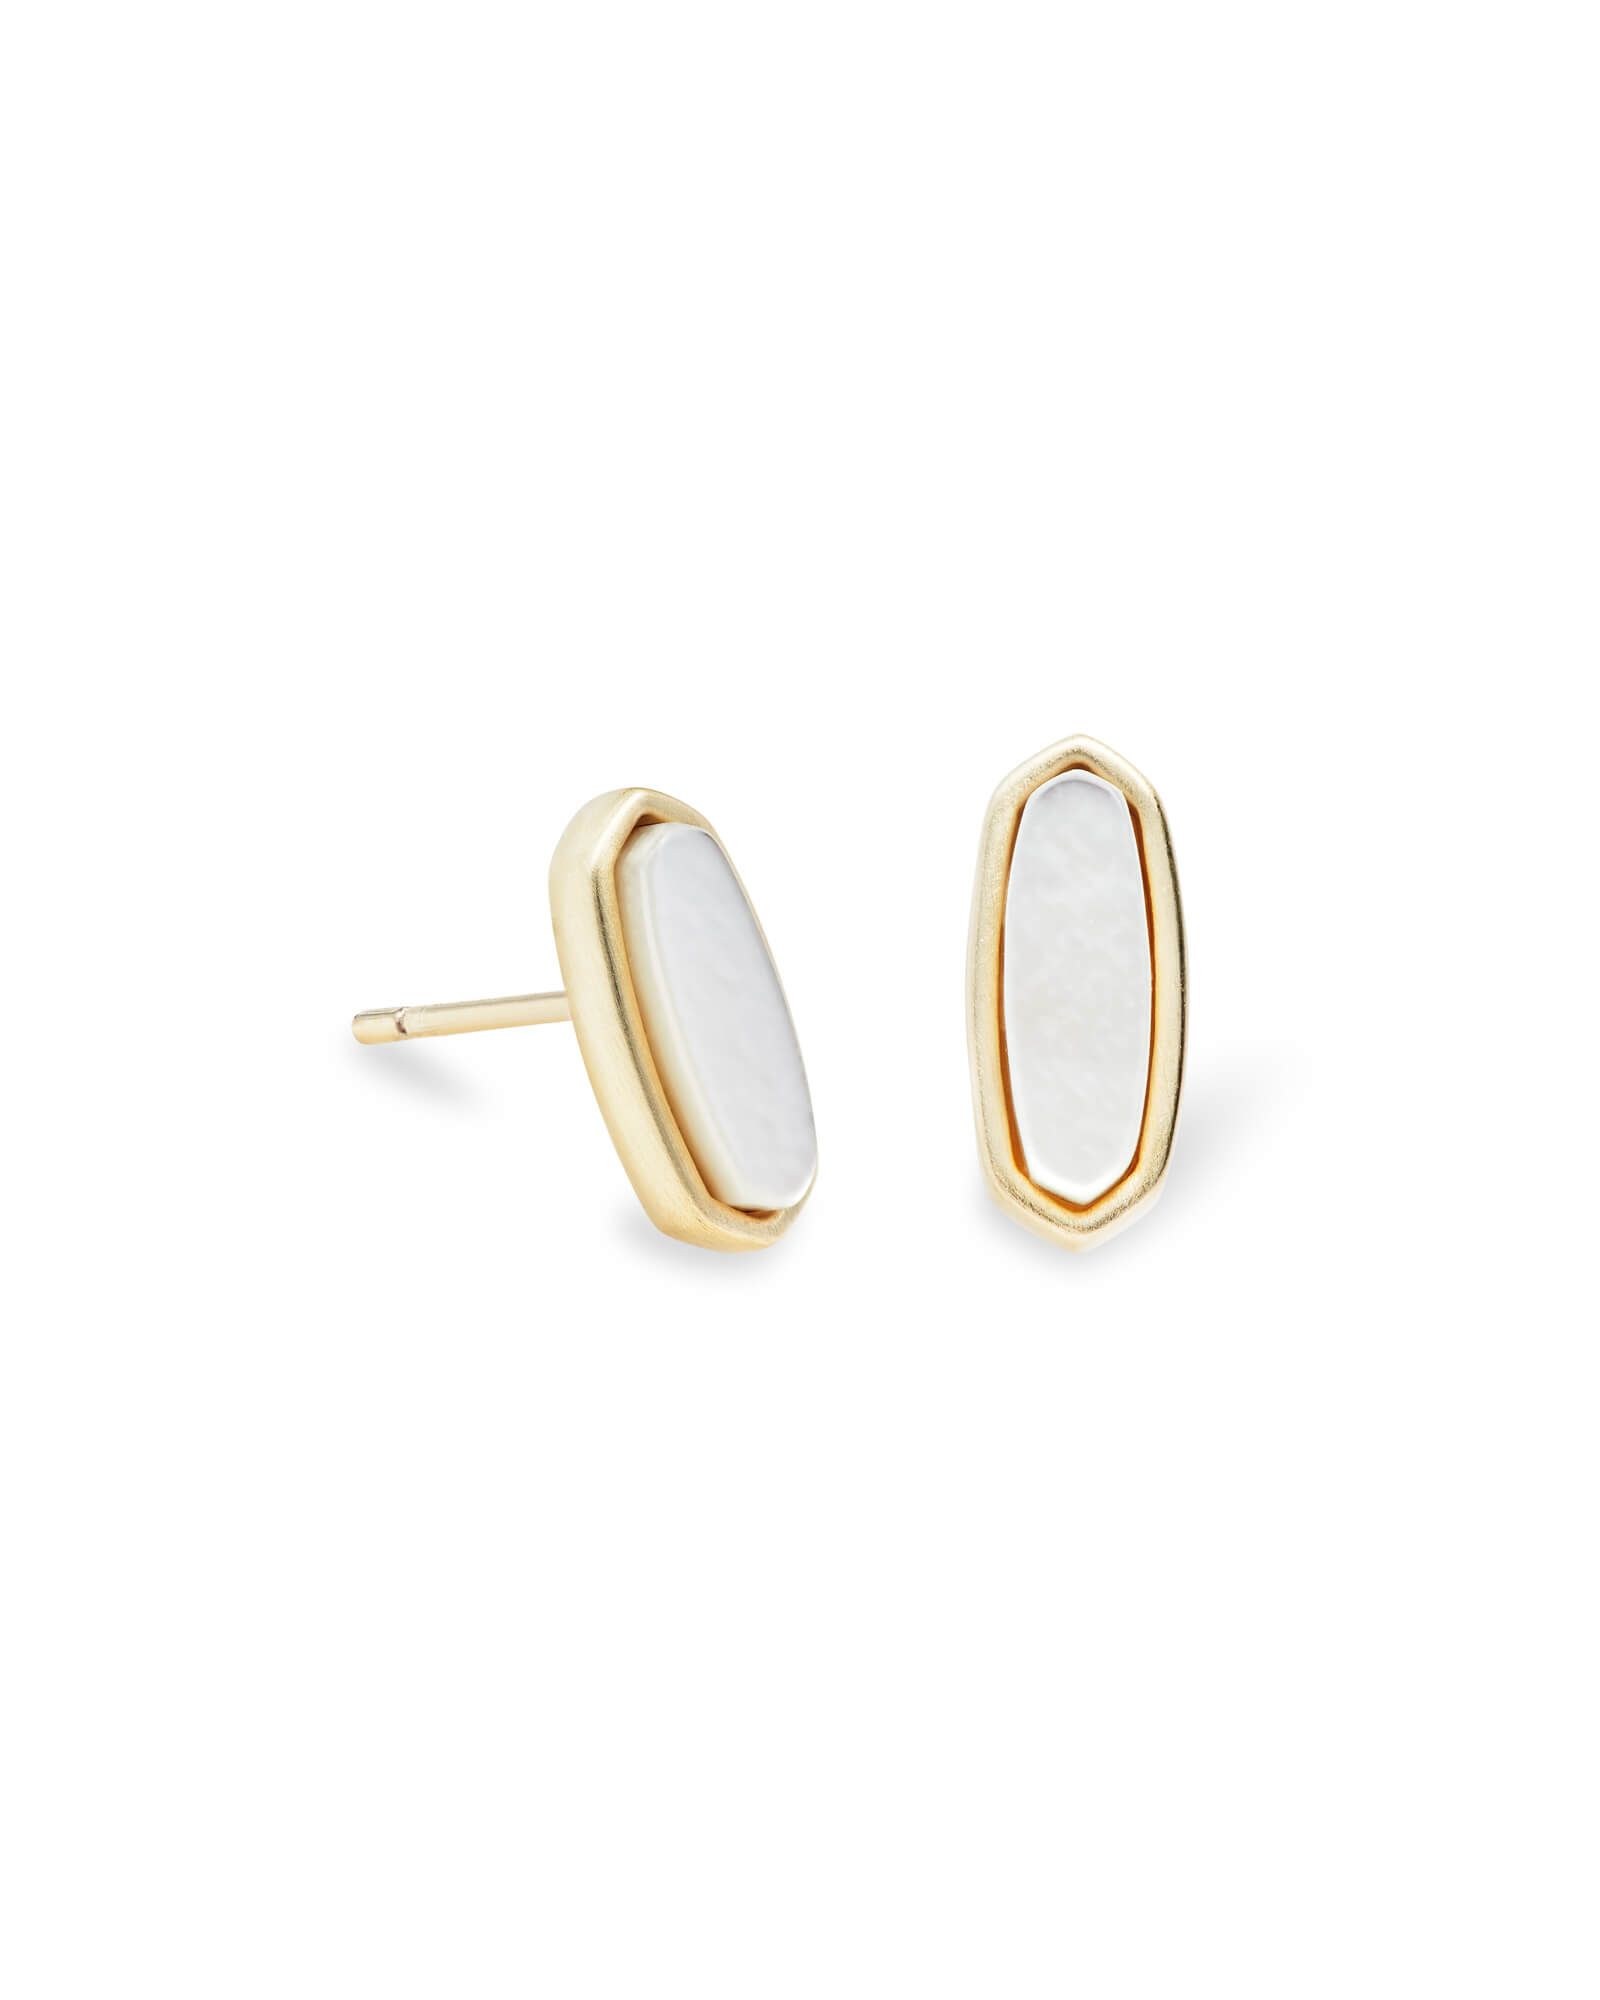 Mae Gold Stud Earrings in Ivory Pearl | Kendra Scott